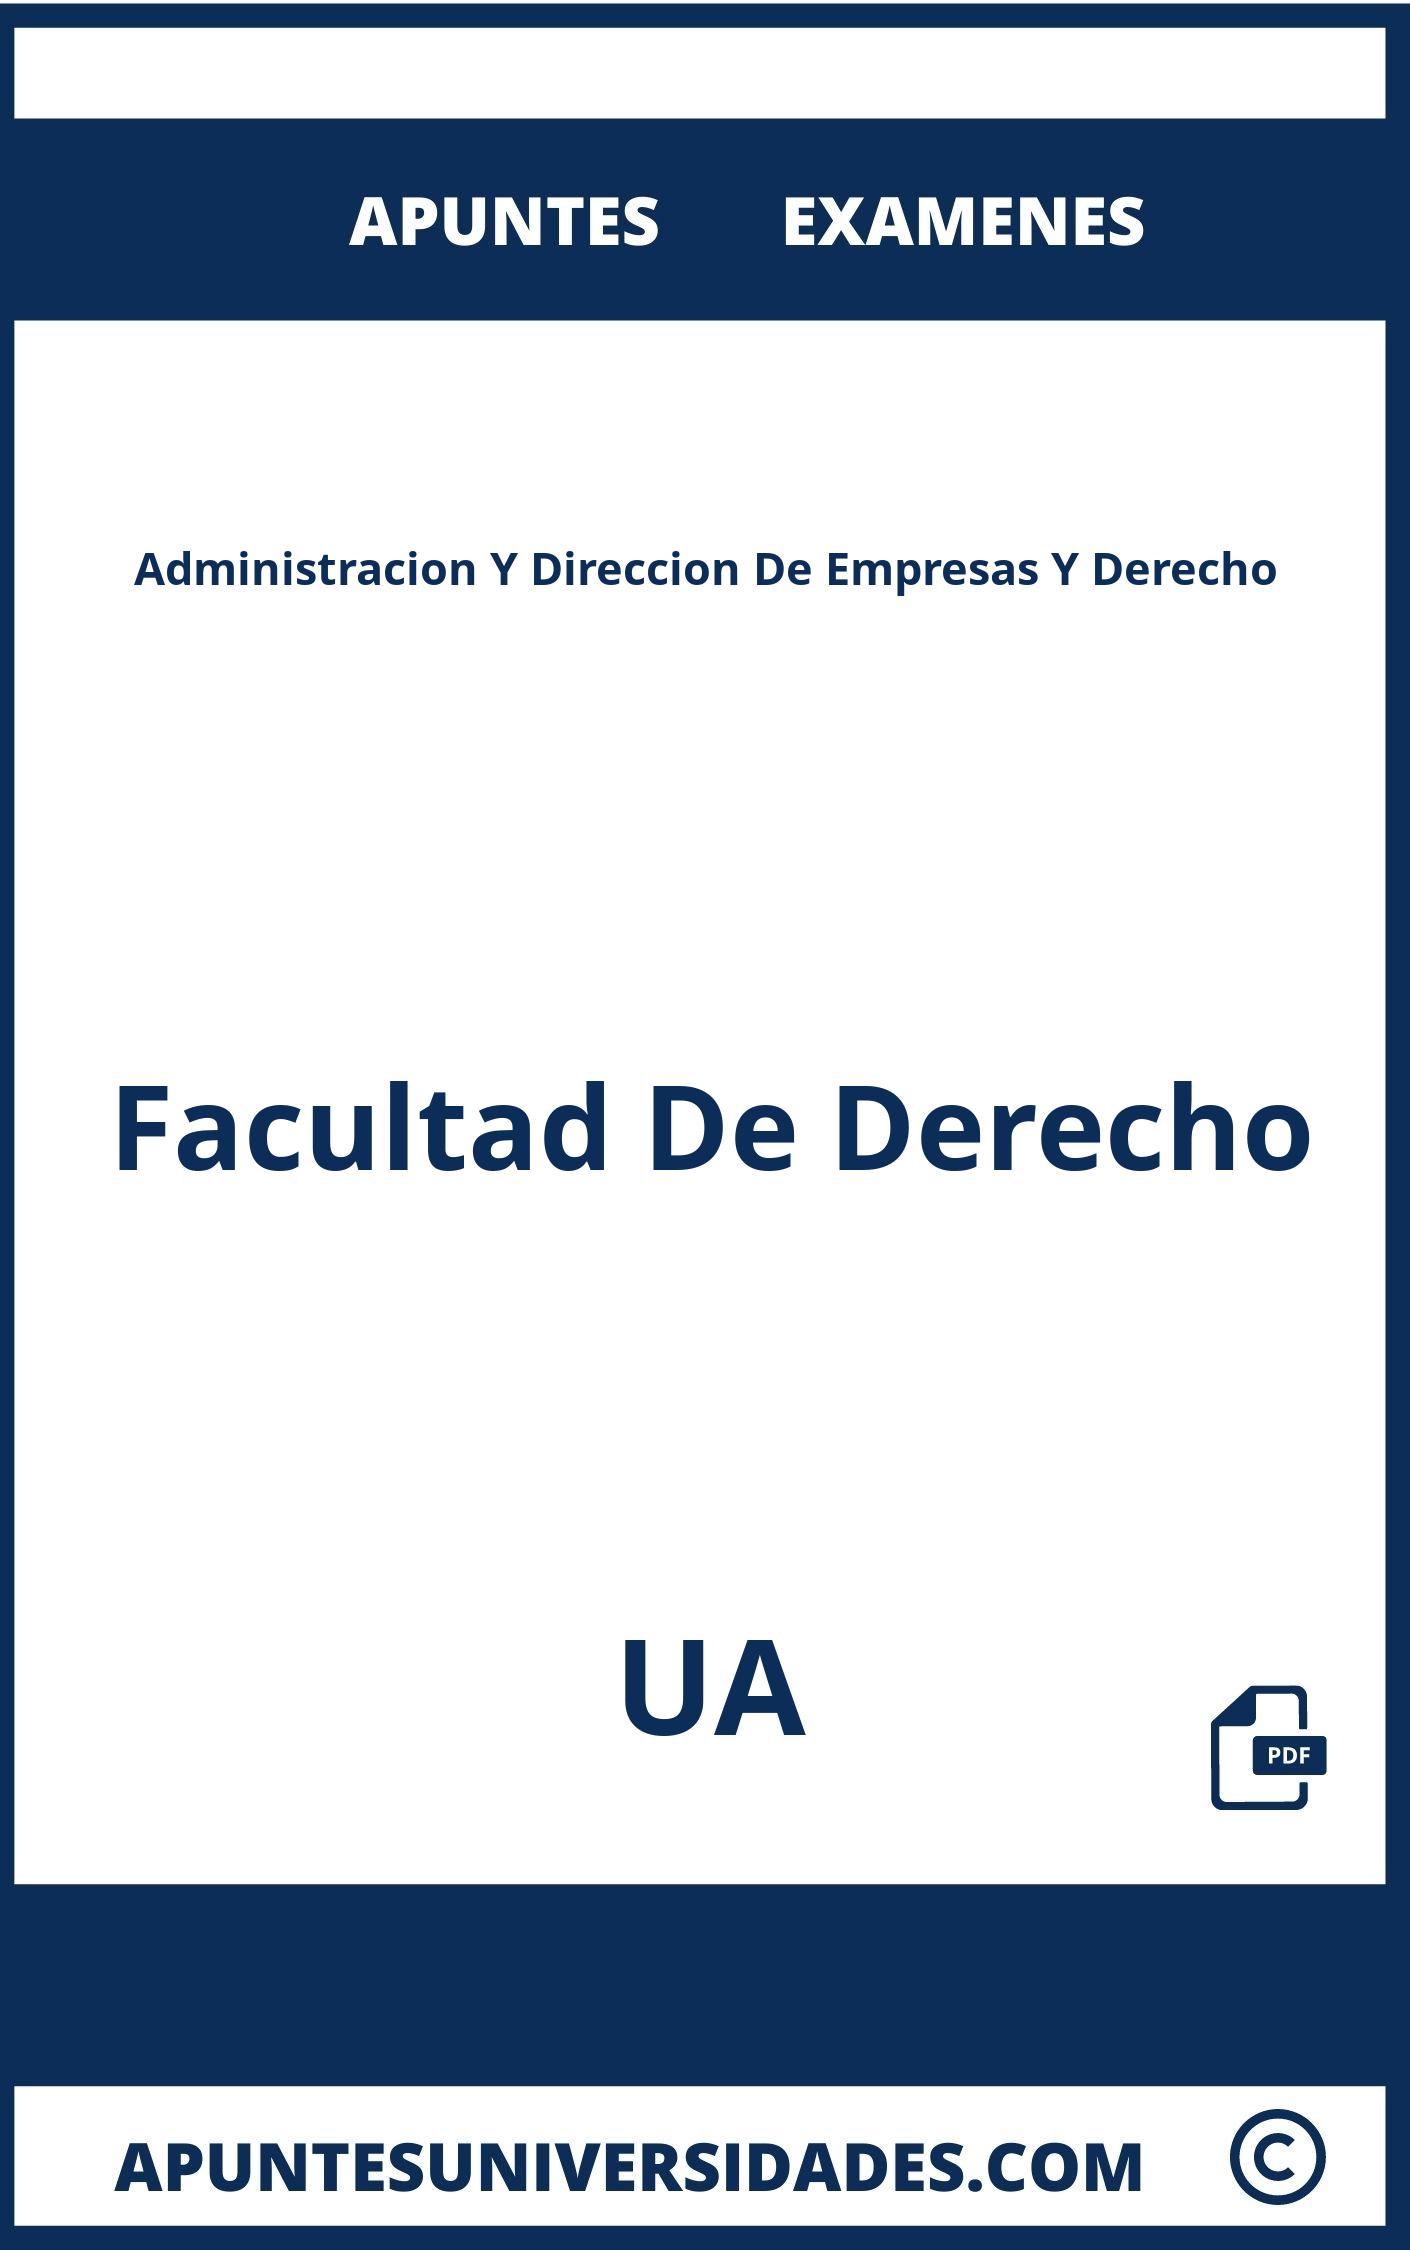 Apuntes y Examenes Administracion Y Direccion De Empresas Y Derecho UA